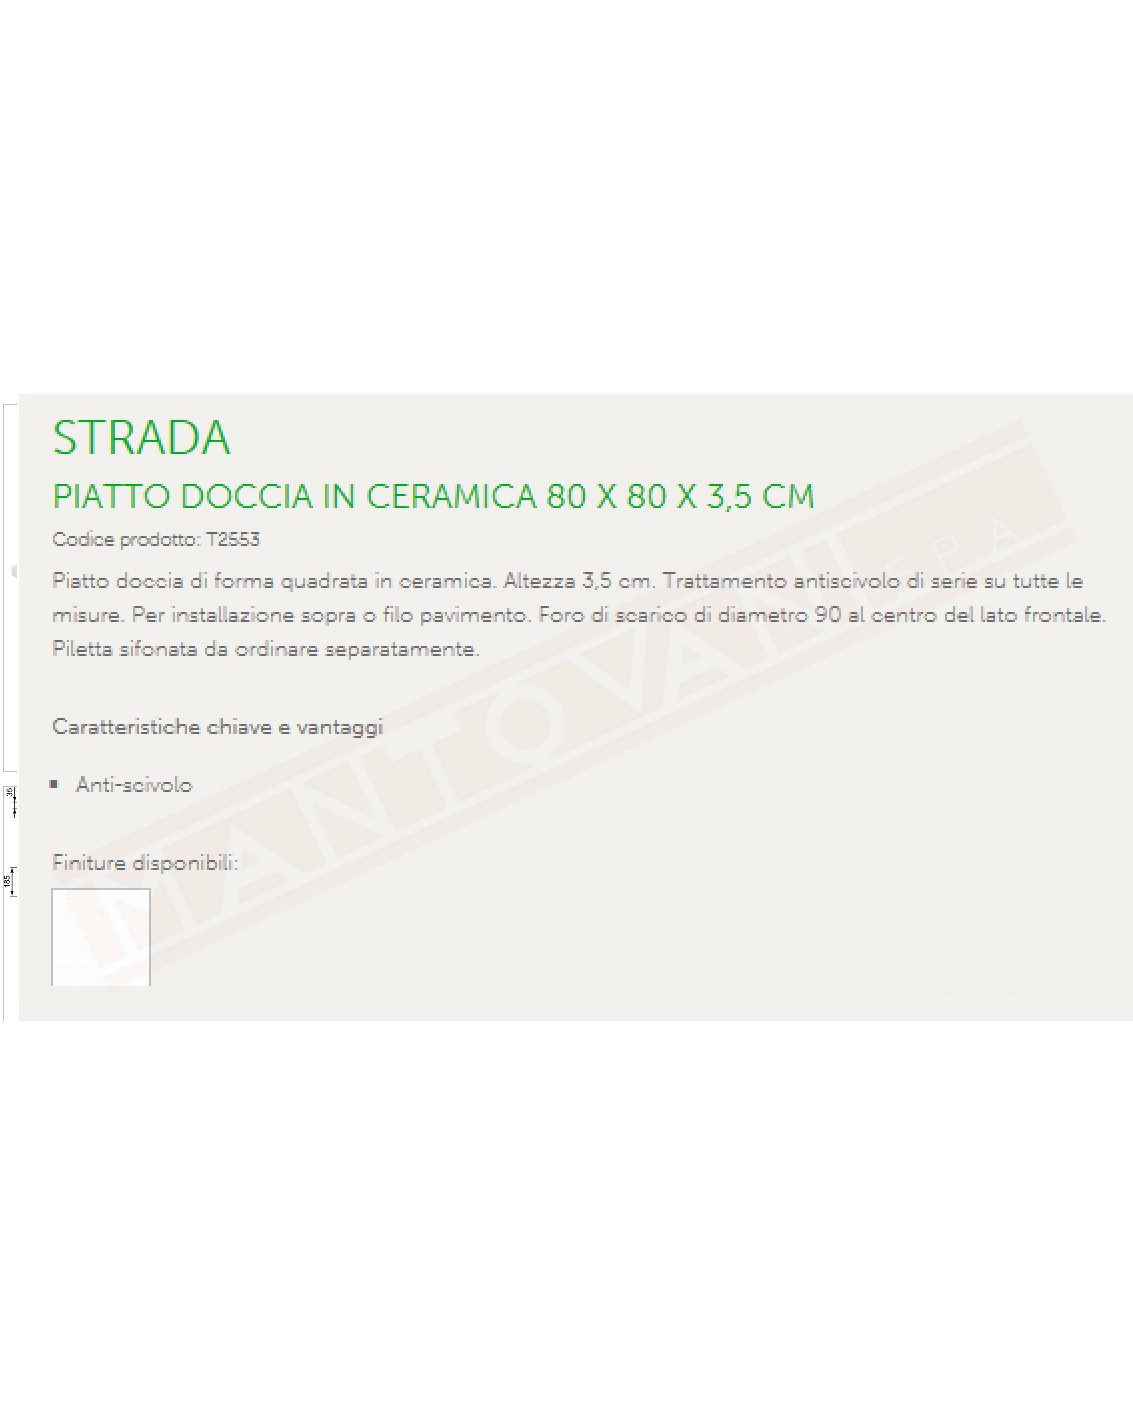 IDEAL STANDARD STRADA PIATTO DOCCIA 80x80 H 3.5 CM CON TRATTAMENTO ANTISCIVOLO FORO DIAMETRO 90 AL CENTRO DEL LATO FRONTALE ffp